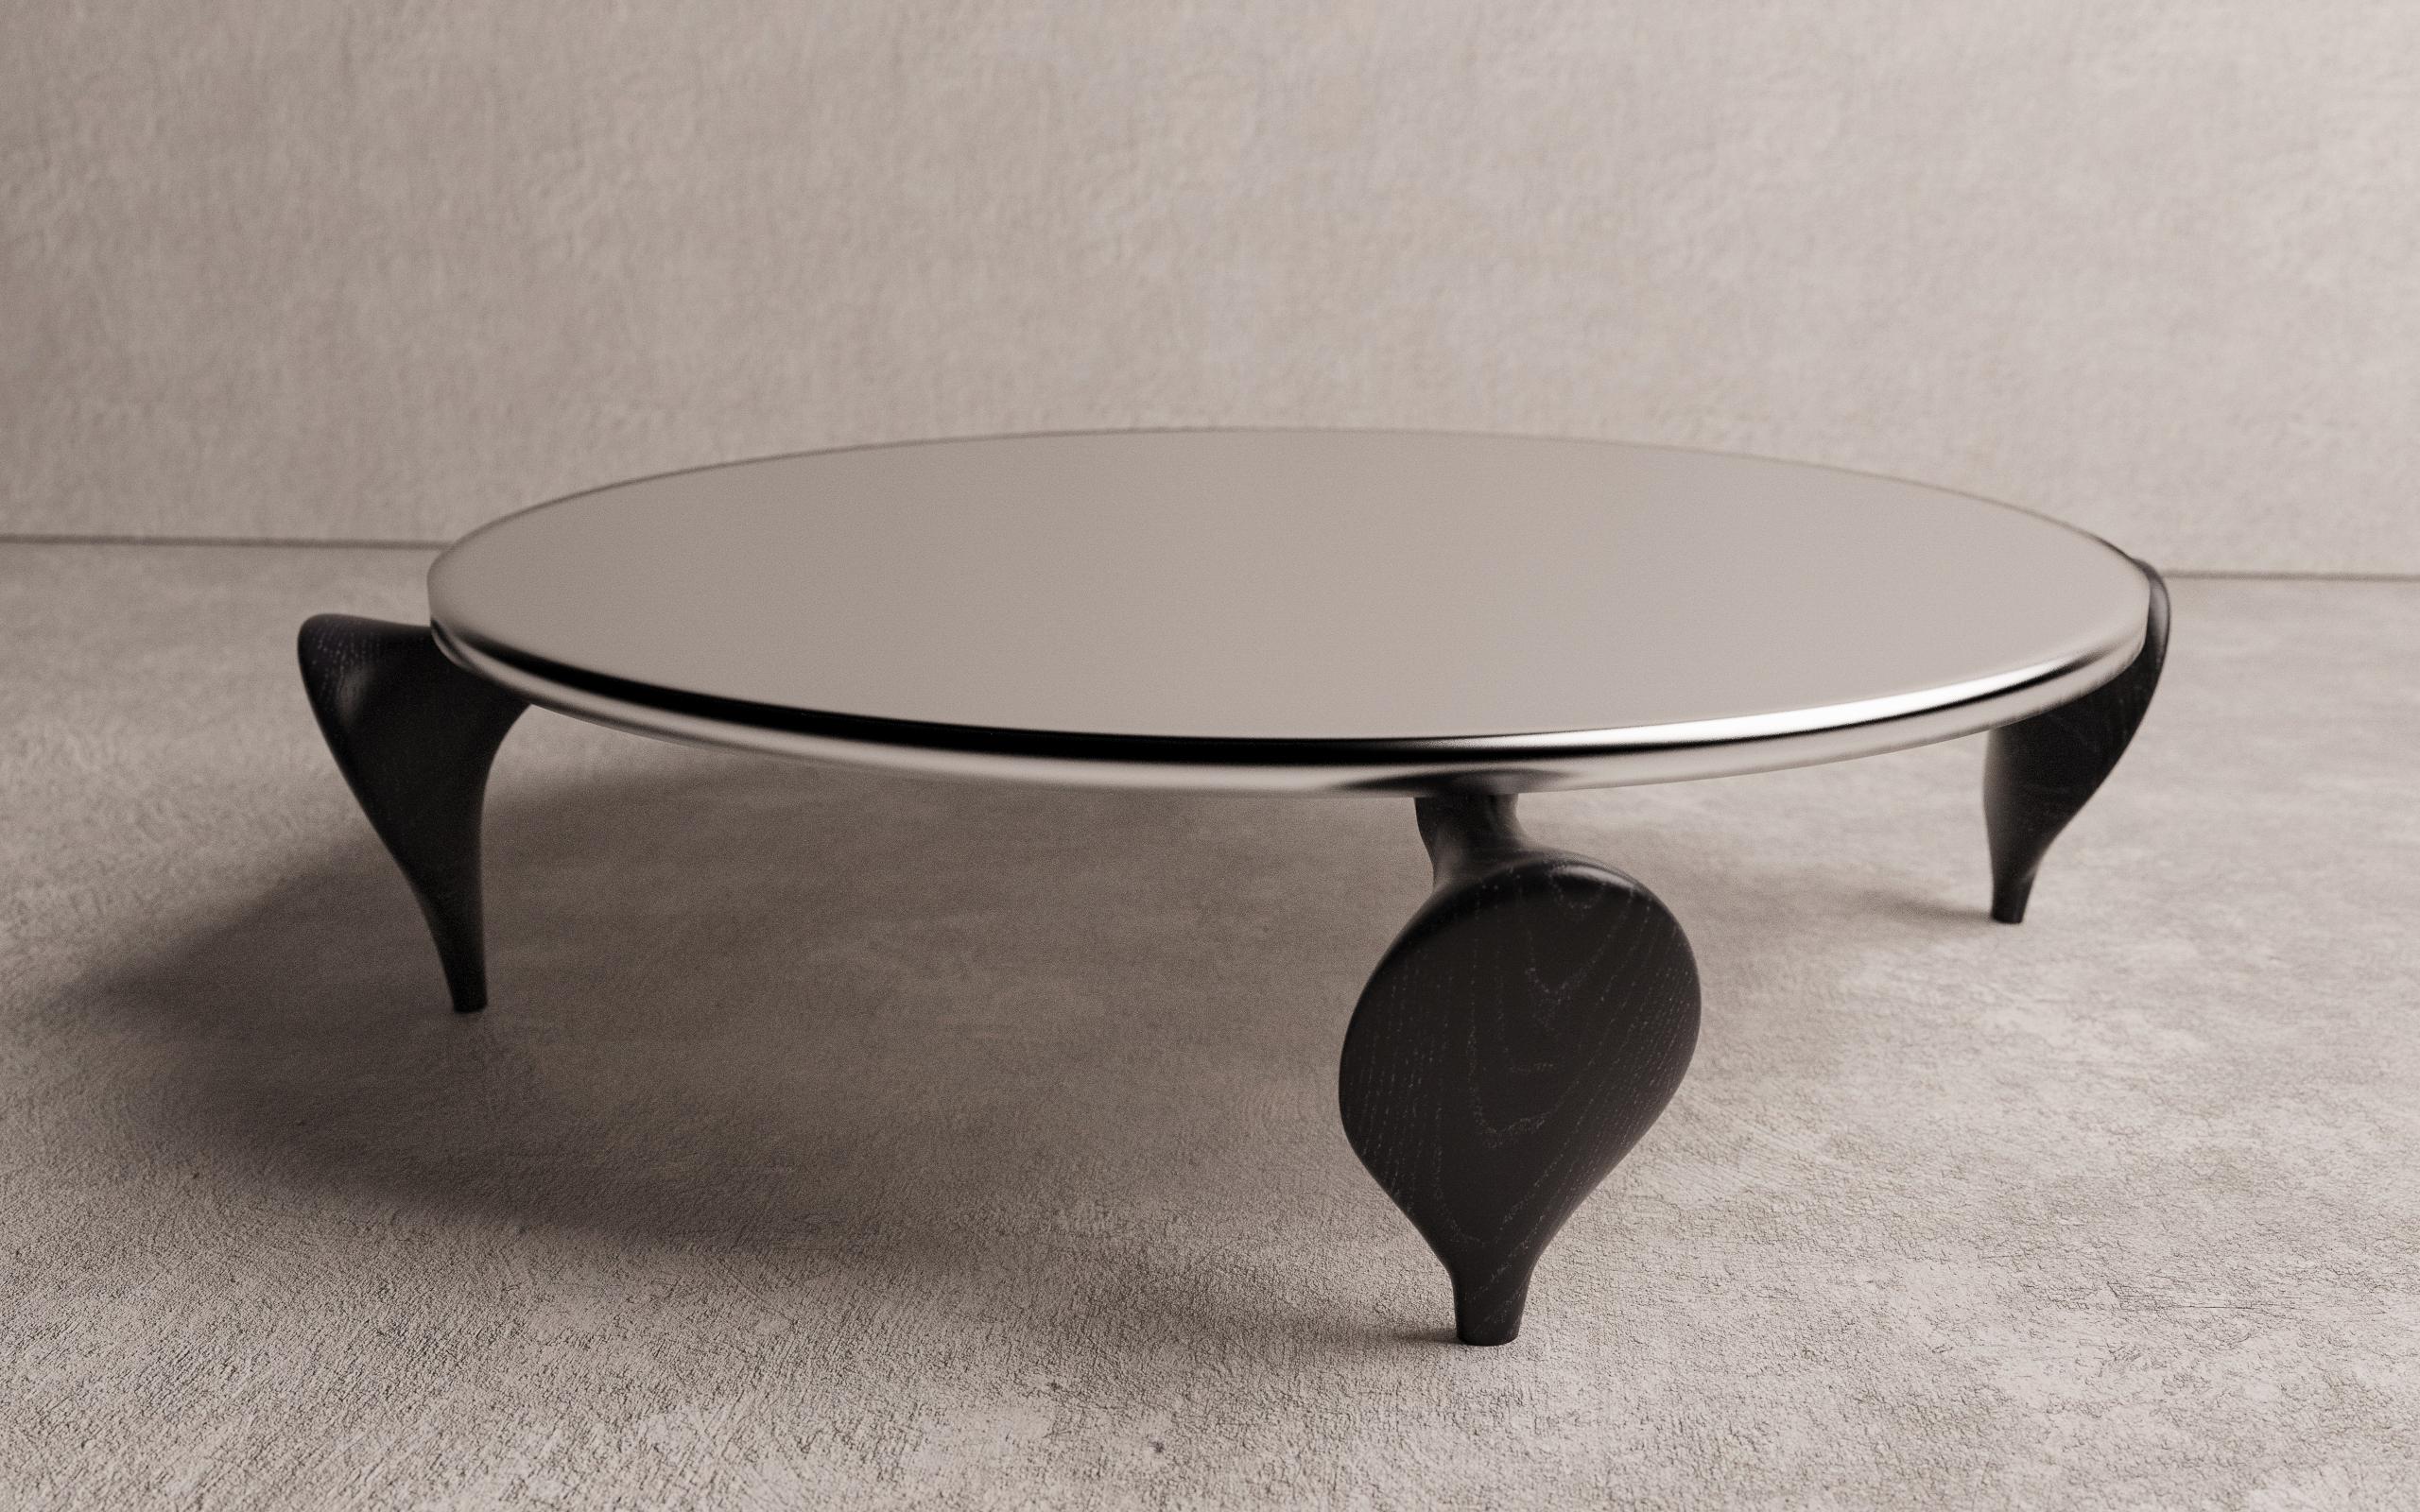 La table basse Aryota de Christopher Mark est une pièce unique fabriquée à la main. Christophe a été inspiré par le contraste d'une forme incrustée dans un affleurement rocheux près du magasin 7/8. Le plateau de la table basse est en aluminium avec